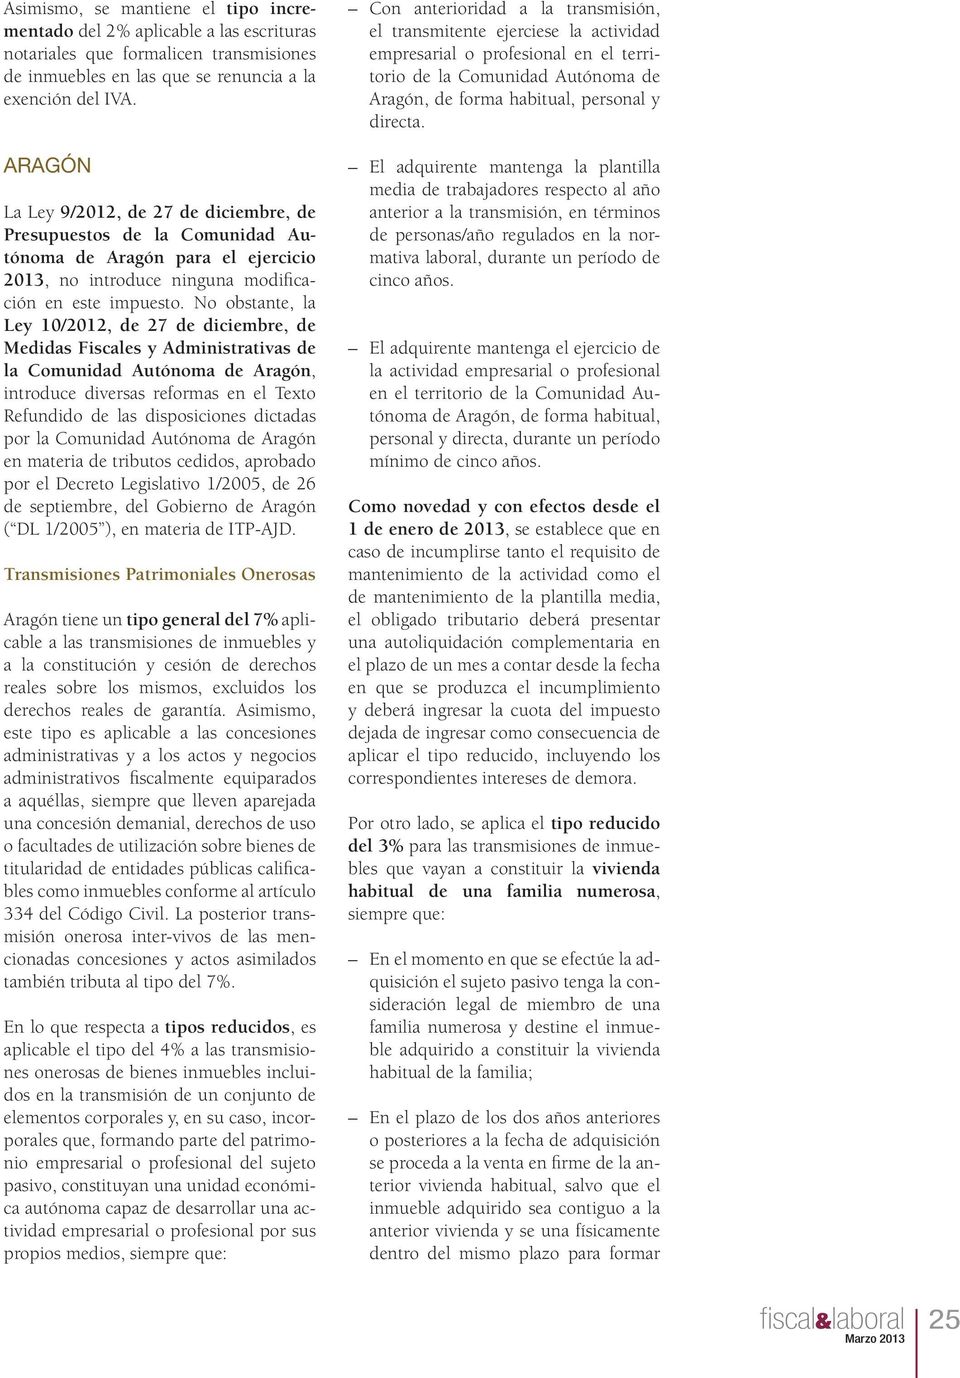 No obstante, la Ley 10/2012, de 27 de diciembre, de Medidas Fiscales y Administrativas de la Comunidad Autónoma de Aragón, introduce diversas reformas en el Texto Refundido de las disposiciones